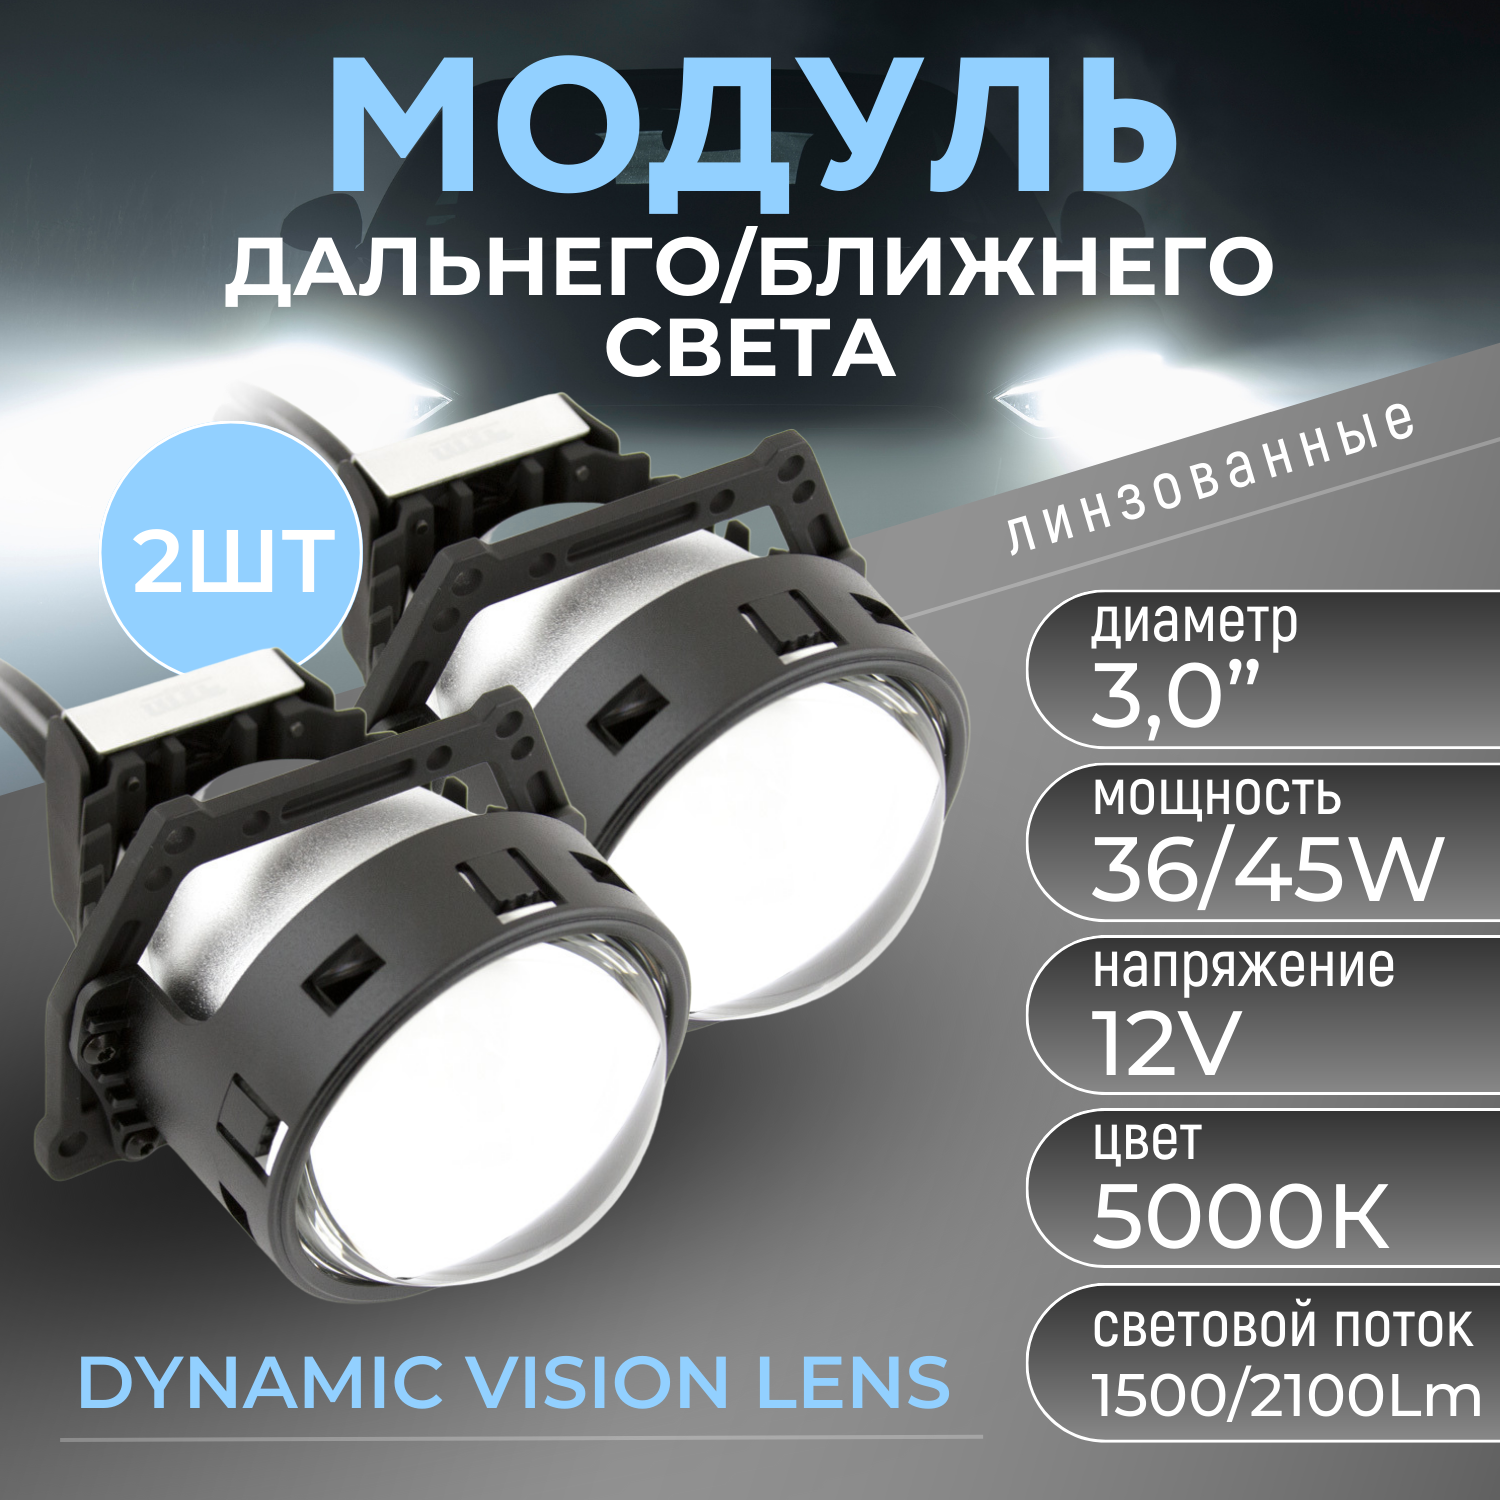 Светодиодные модули ближнего/дальнего света MTF Light DYNAMIC VISION Expert 12В, 45Вт, 5000К, 3 д-ма, комп. 2шт.